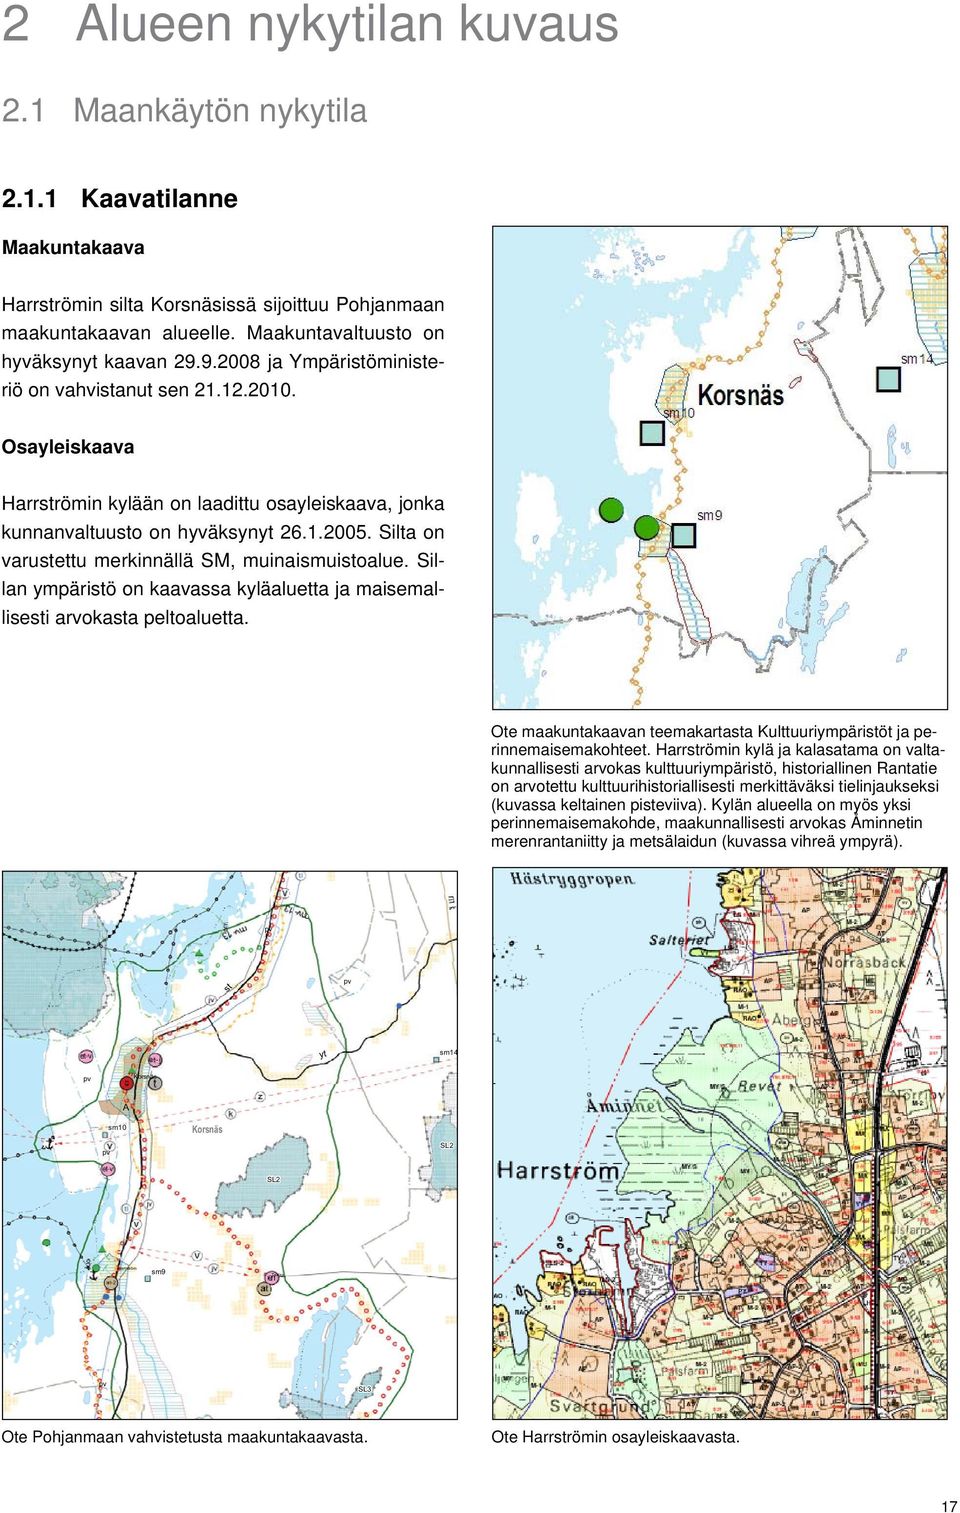 Osayleiskaava Harrströmin kylään on laadittu osayleiskaava, jonka kunnanvaltuusto on hyväksynyt 26.1.2005. Silta on varustettu merkinnällä SM, muinaismuistoalue.